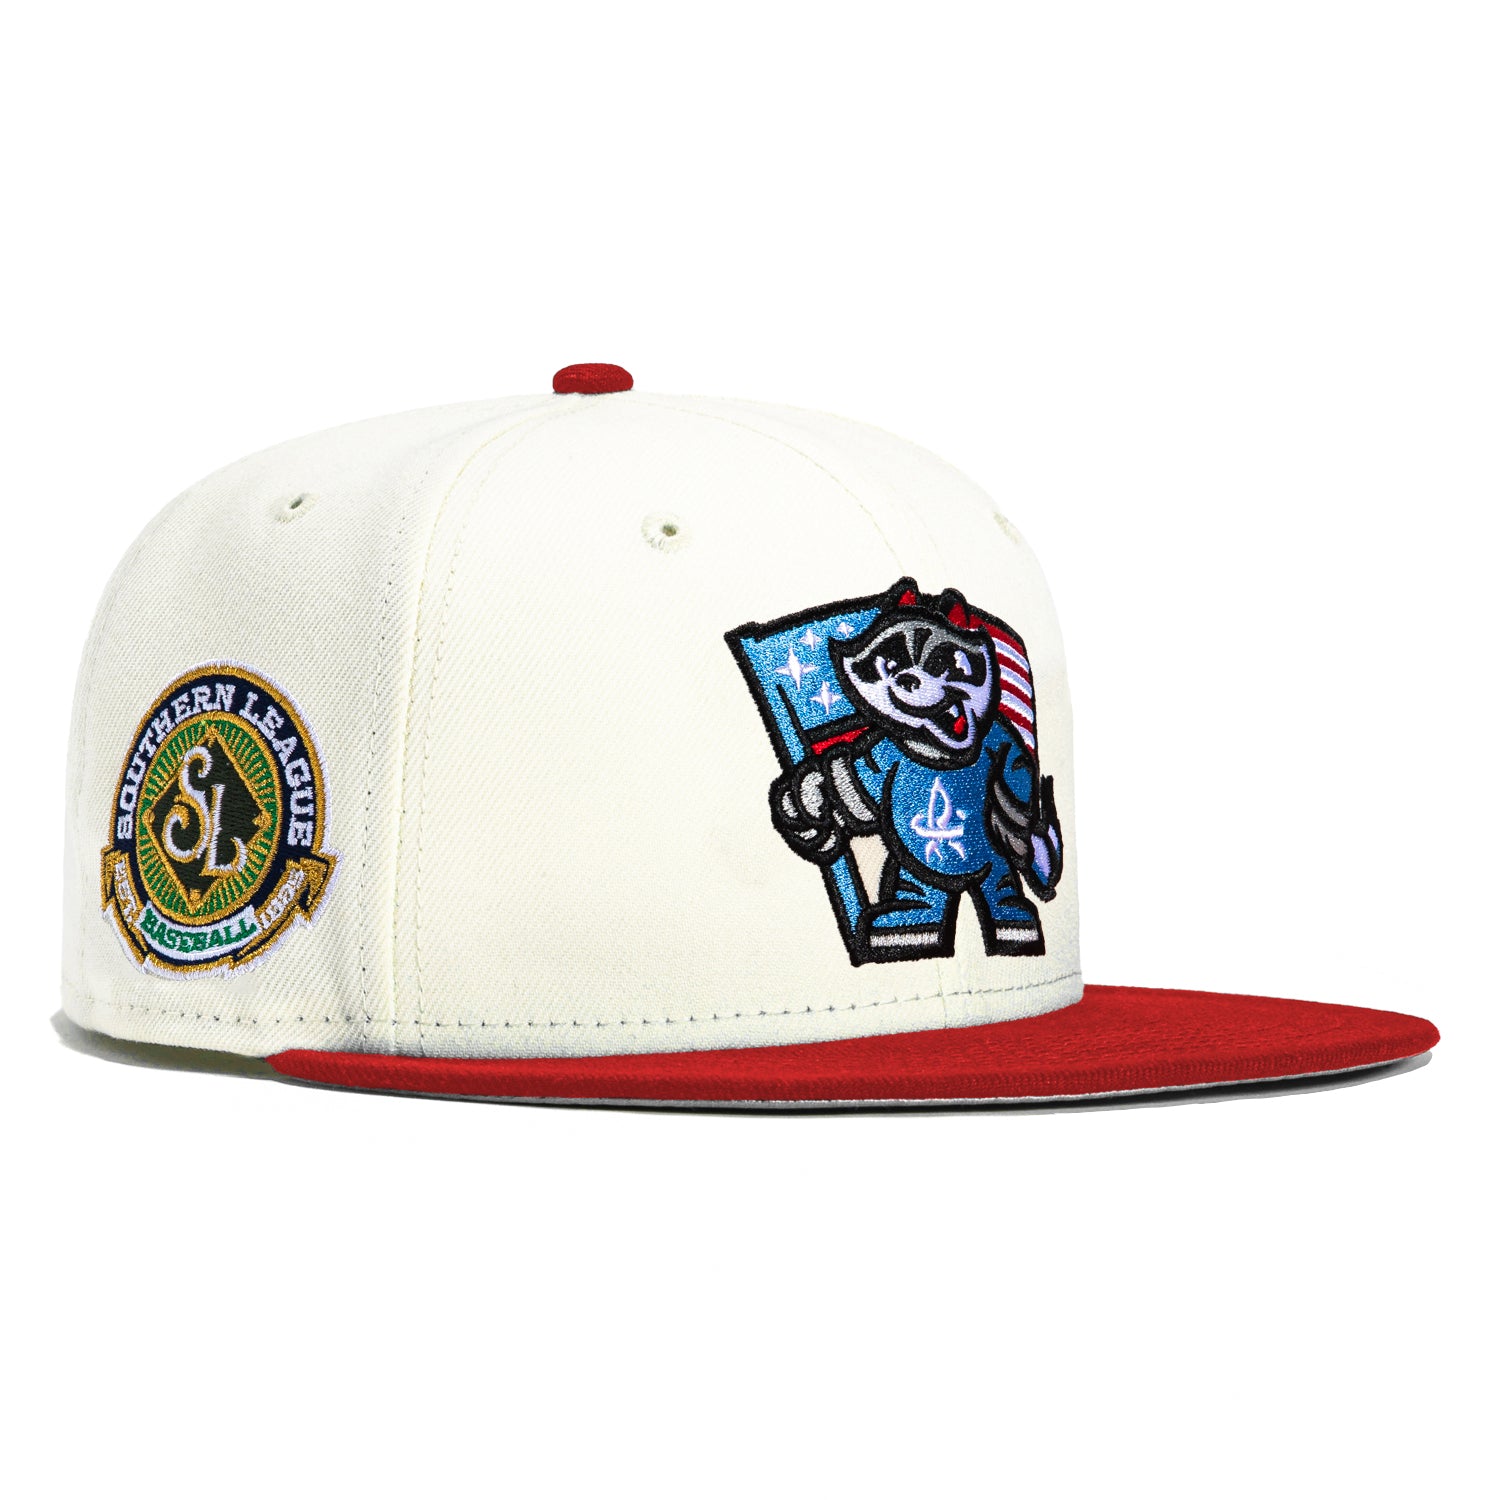 New Era 59FIFTY Rocket City Trash Pandas Southern League Patch Hat - White, Red White/Neon Blue / 7 3/8